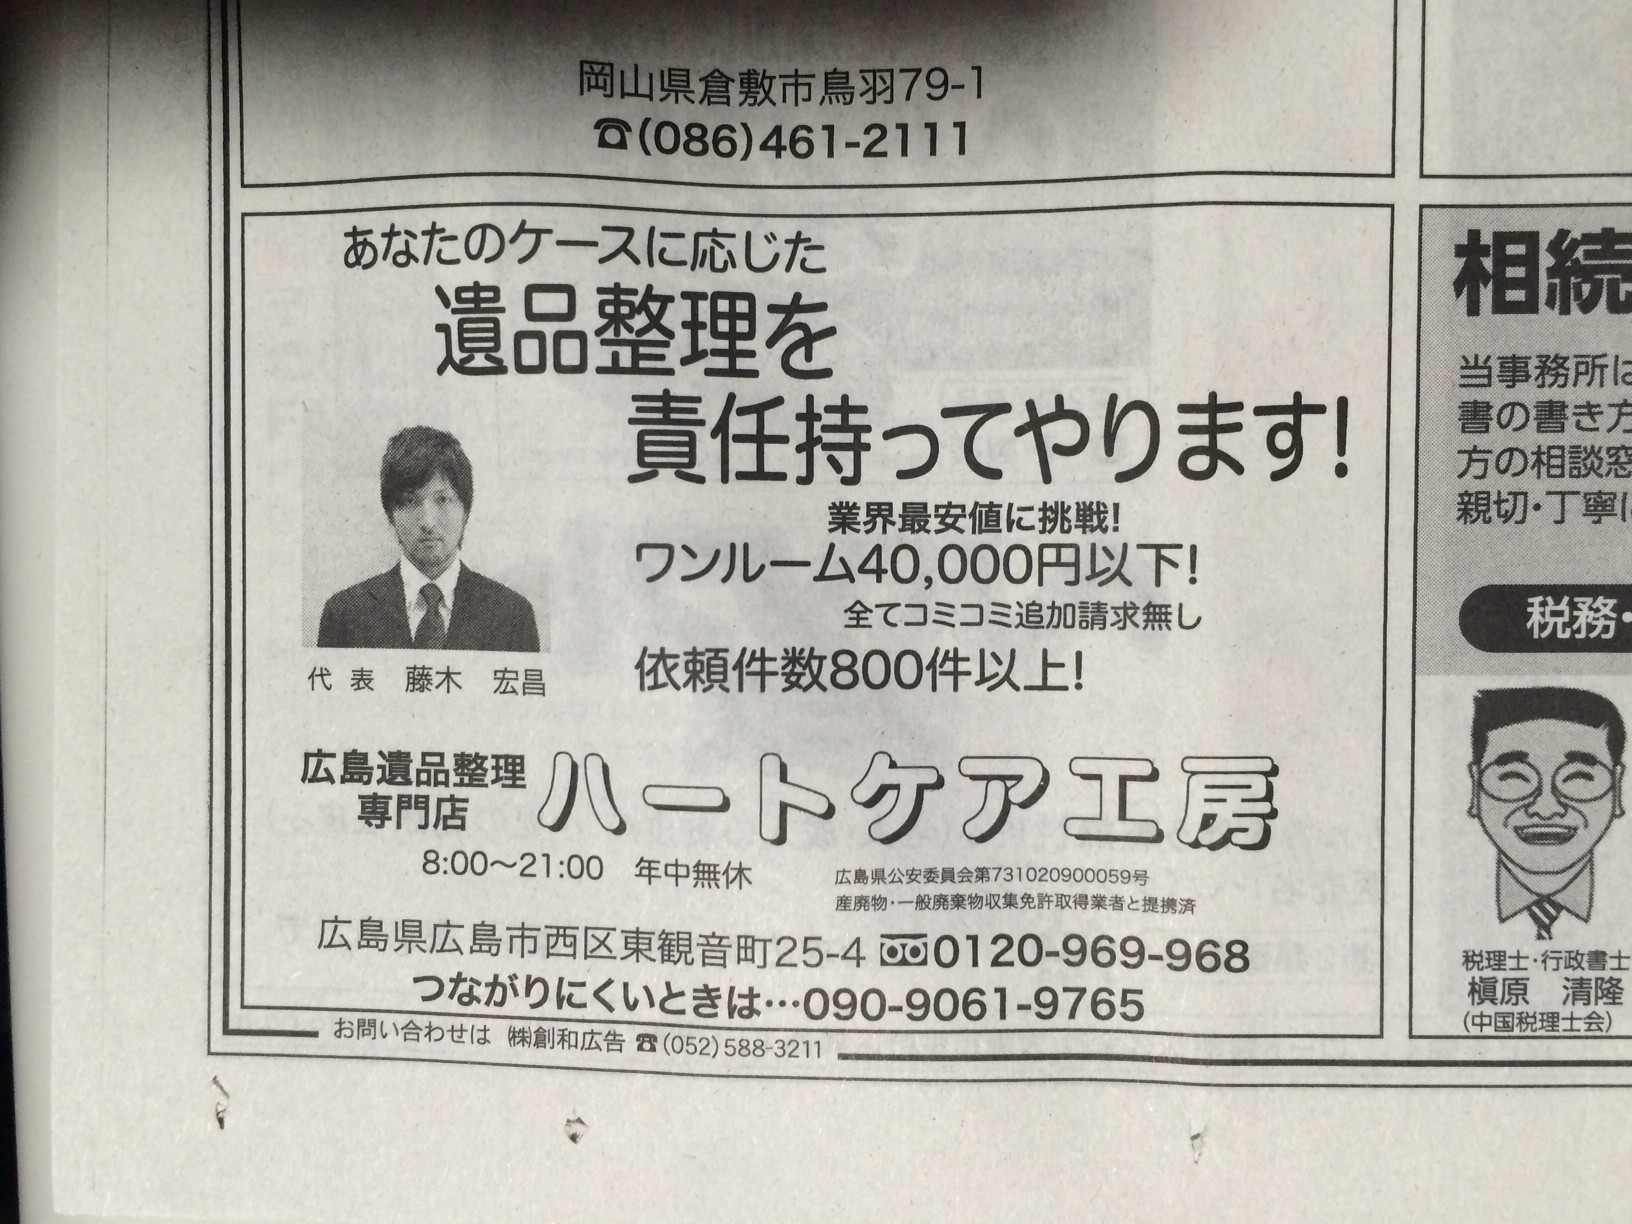 広島の遺品整理専門店として初めて毎日新聞に掲載されました